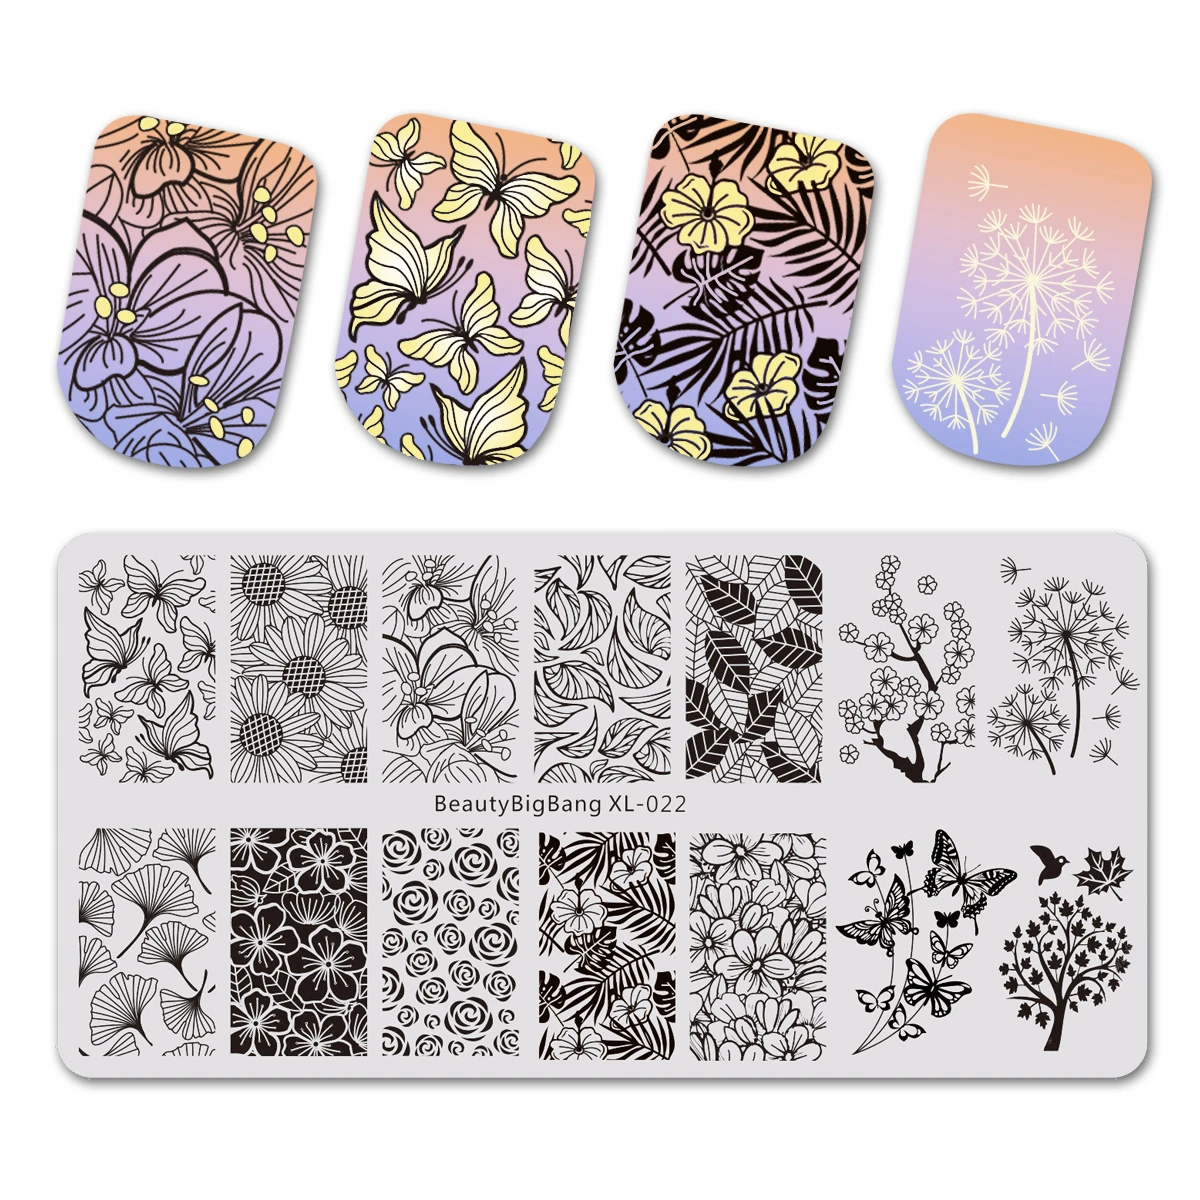 Набор пластин для стемпинга Beautybigbang 3 пластинки для ногтей+ штамп для ногтей+ шаблоны для стемпинга чехол+ белая пилка для ногтей формы для искусства наборы